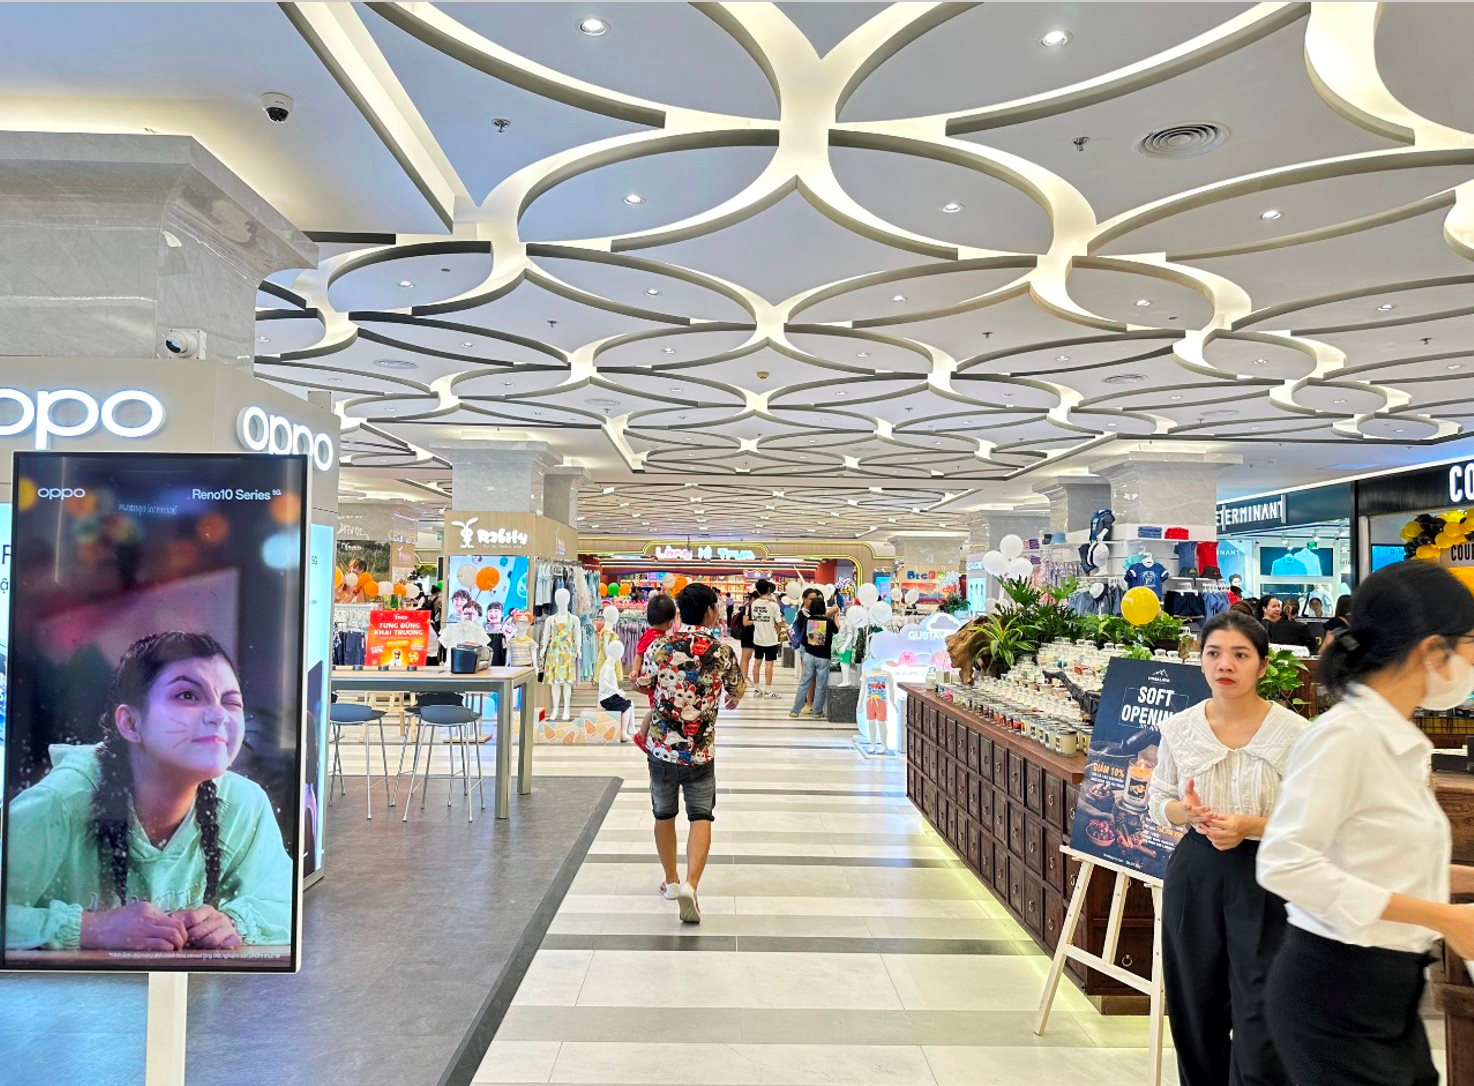 Ông chủ KIDO và cuộc chơi TTTM: Vạn Hạnh Mall “thu 10 đồng lãi 3 đồng”, Hùng Vương Plaza mới ra mắt đã được lấp đầy, doanh thu năm đầu ước tính 250 tỷ đồng - Ảnh 1.